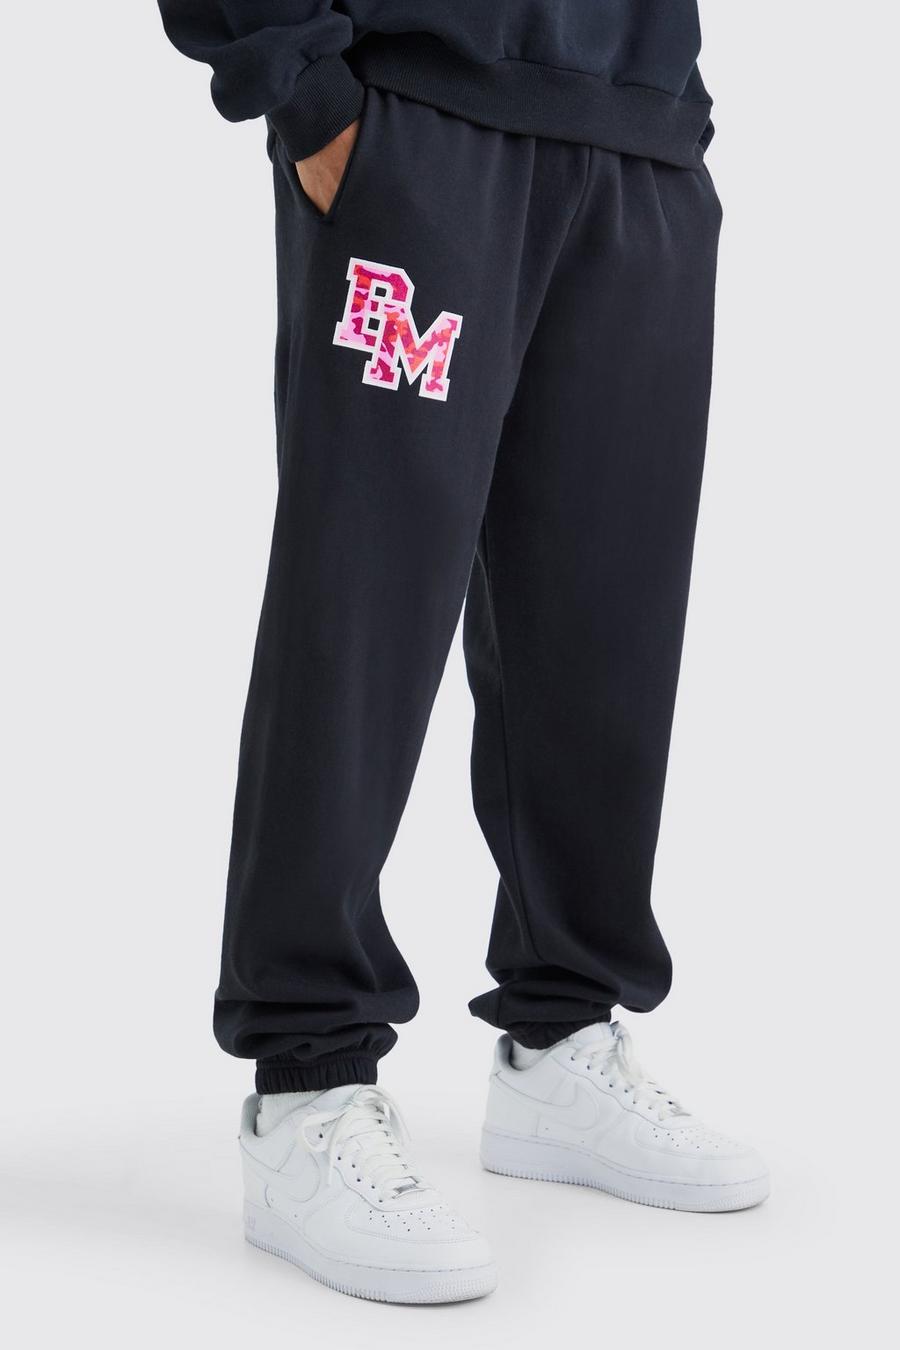 Pantalón deportivo oversize con estampado gráfico universitario BM, Black image number 1